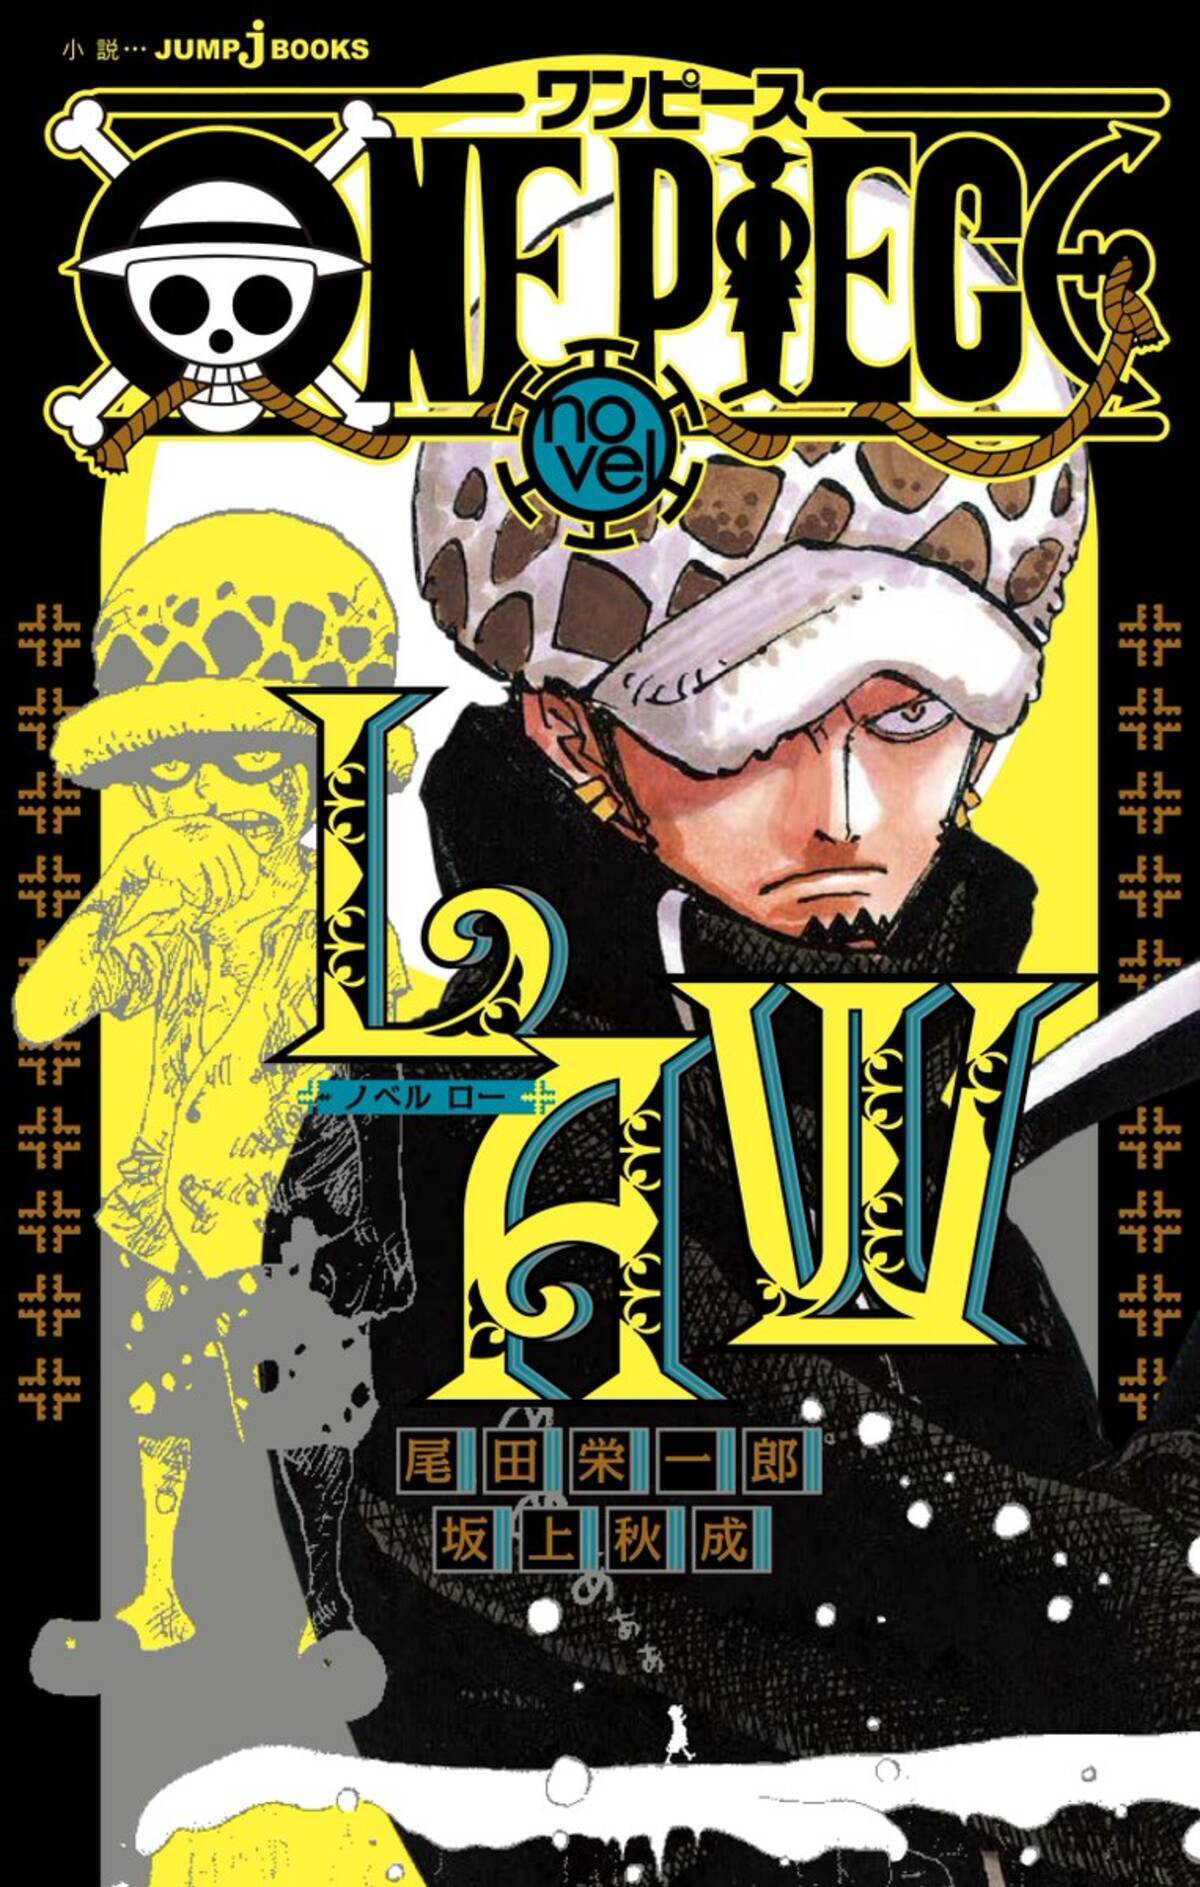 One Piece トラファルガー ローの過去が小説化 漫画本編にはない少年篇 ハートの海賊団結成までの成長篇 年2月21日 エキサイトニュース